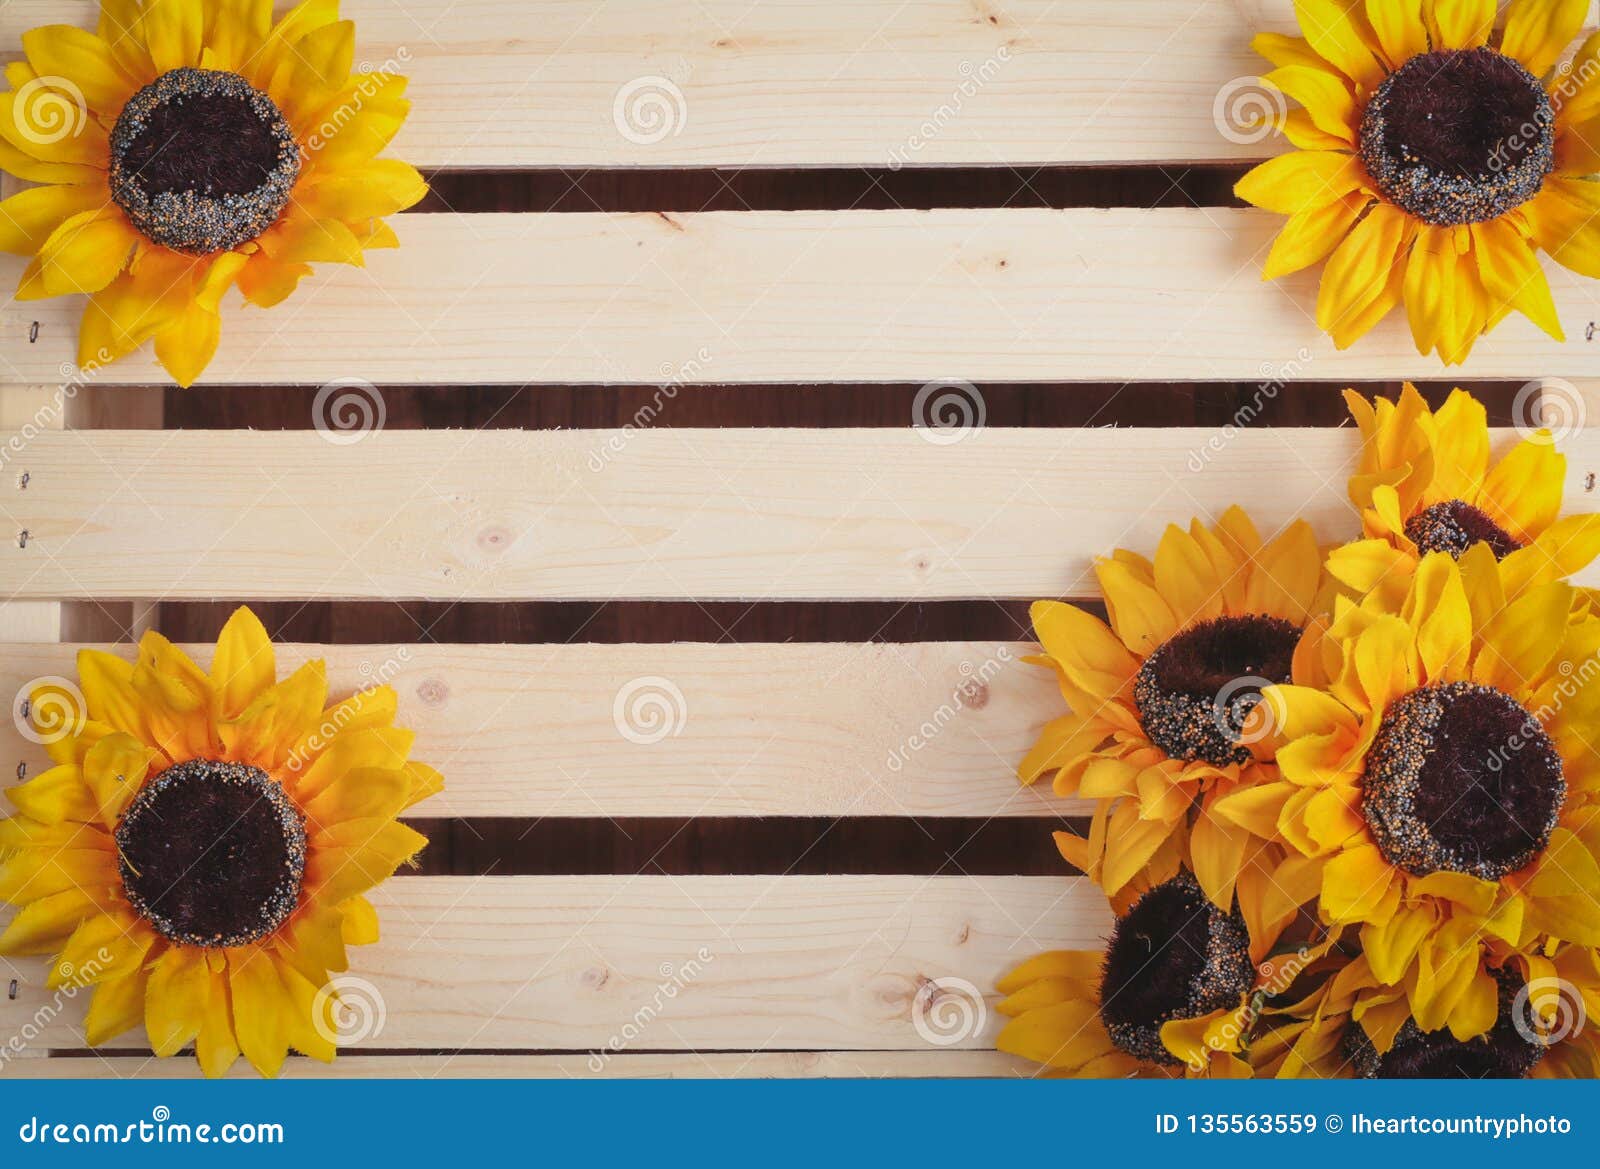 sunflowers on wood slat background